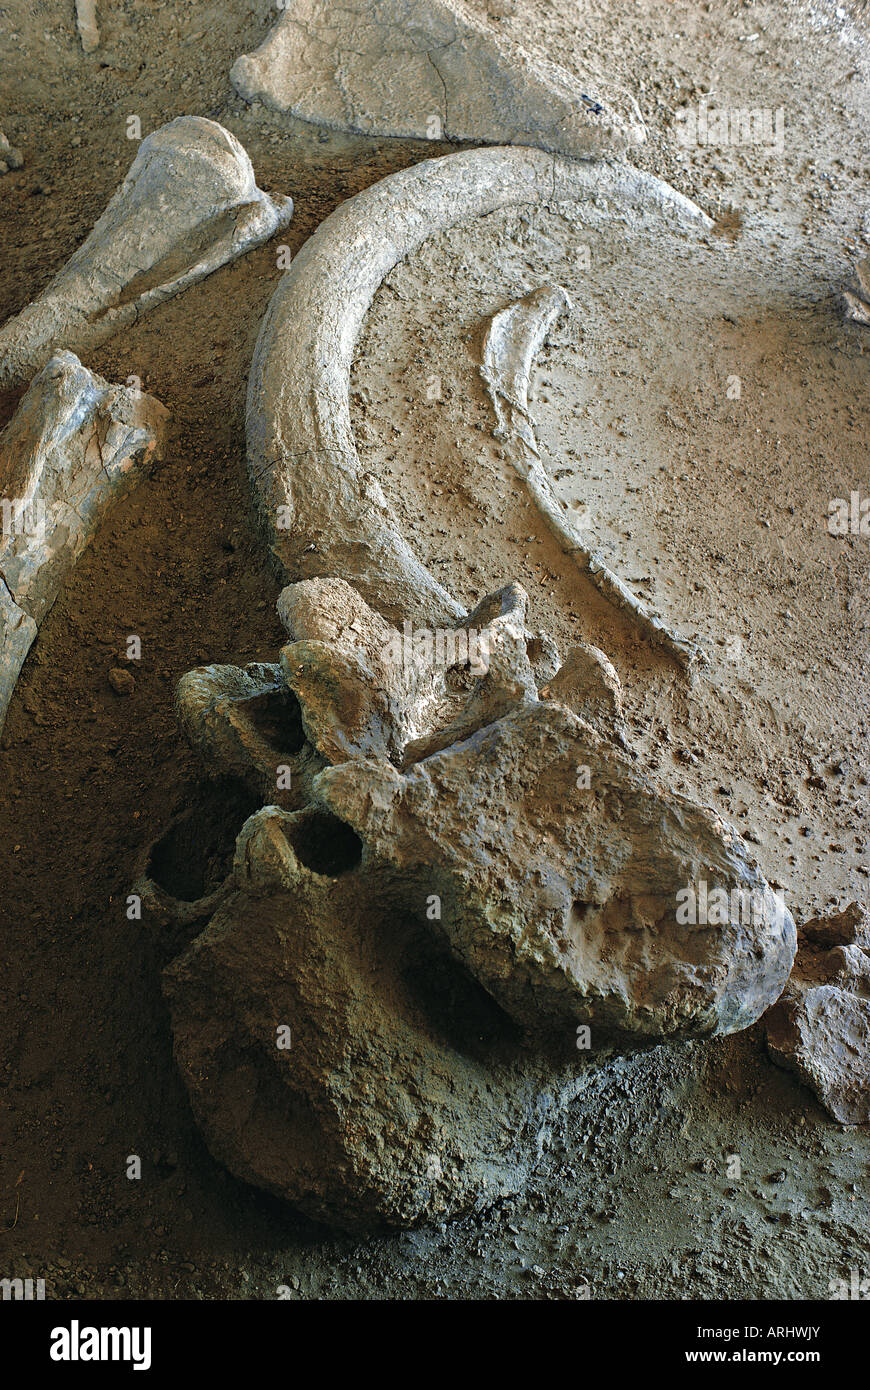 Les fossiles de l'éléphant ELEPHAS RECKI préhistorique antique à Koobi Fora Sibiloi National Park au nord du Kenya, Afrique de l'Est Banque D'Images